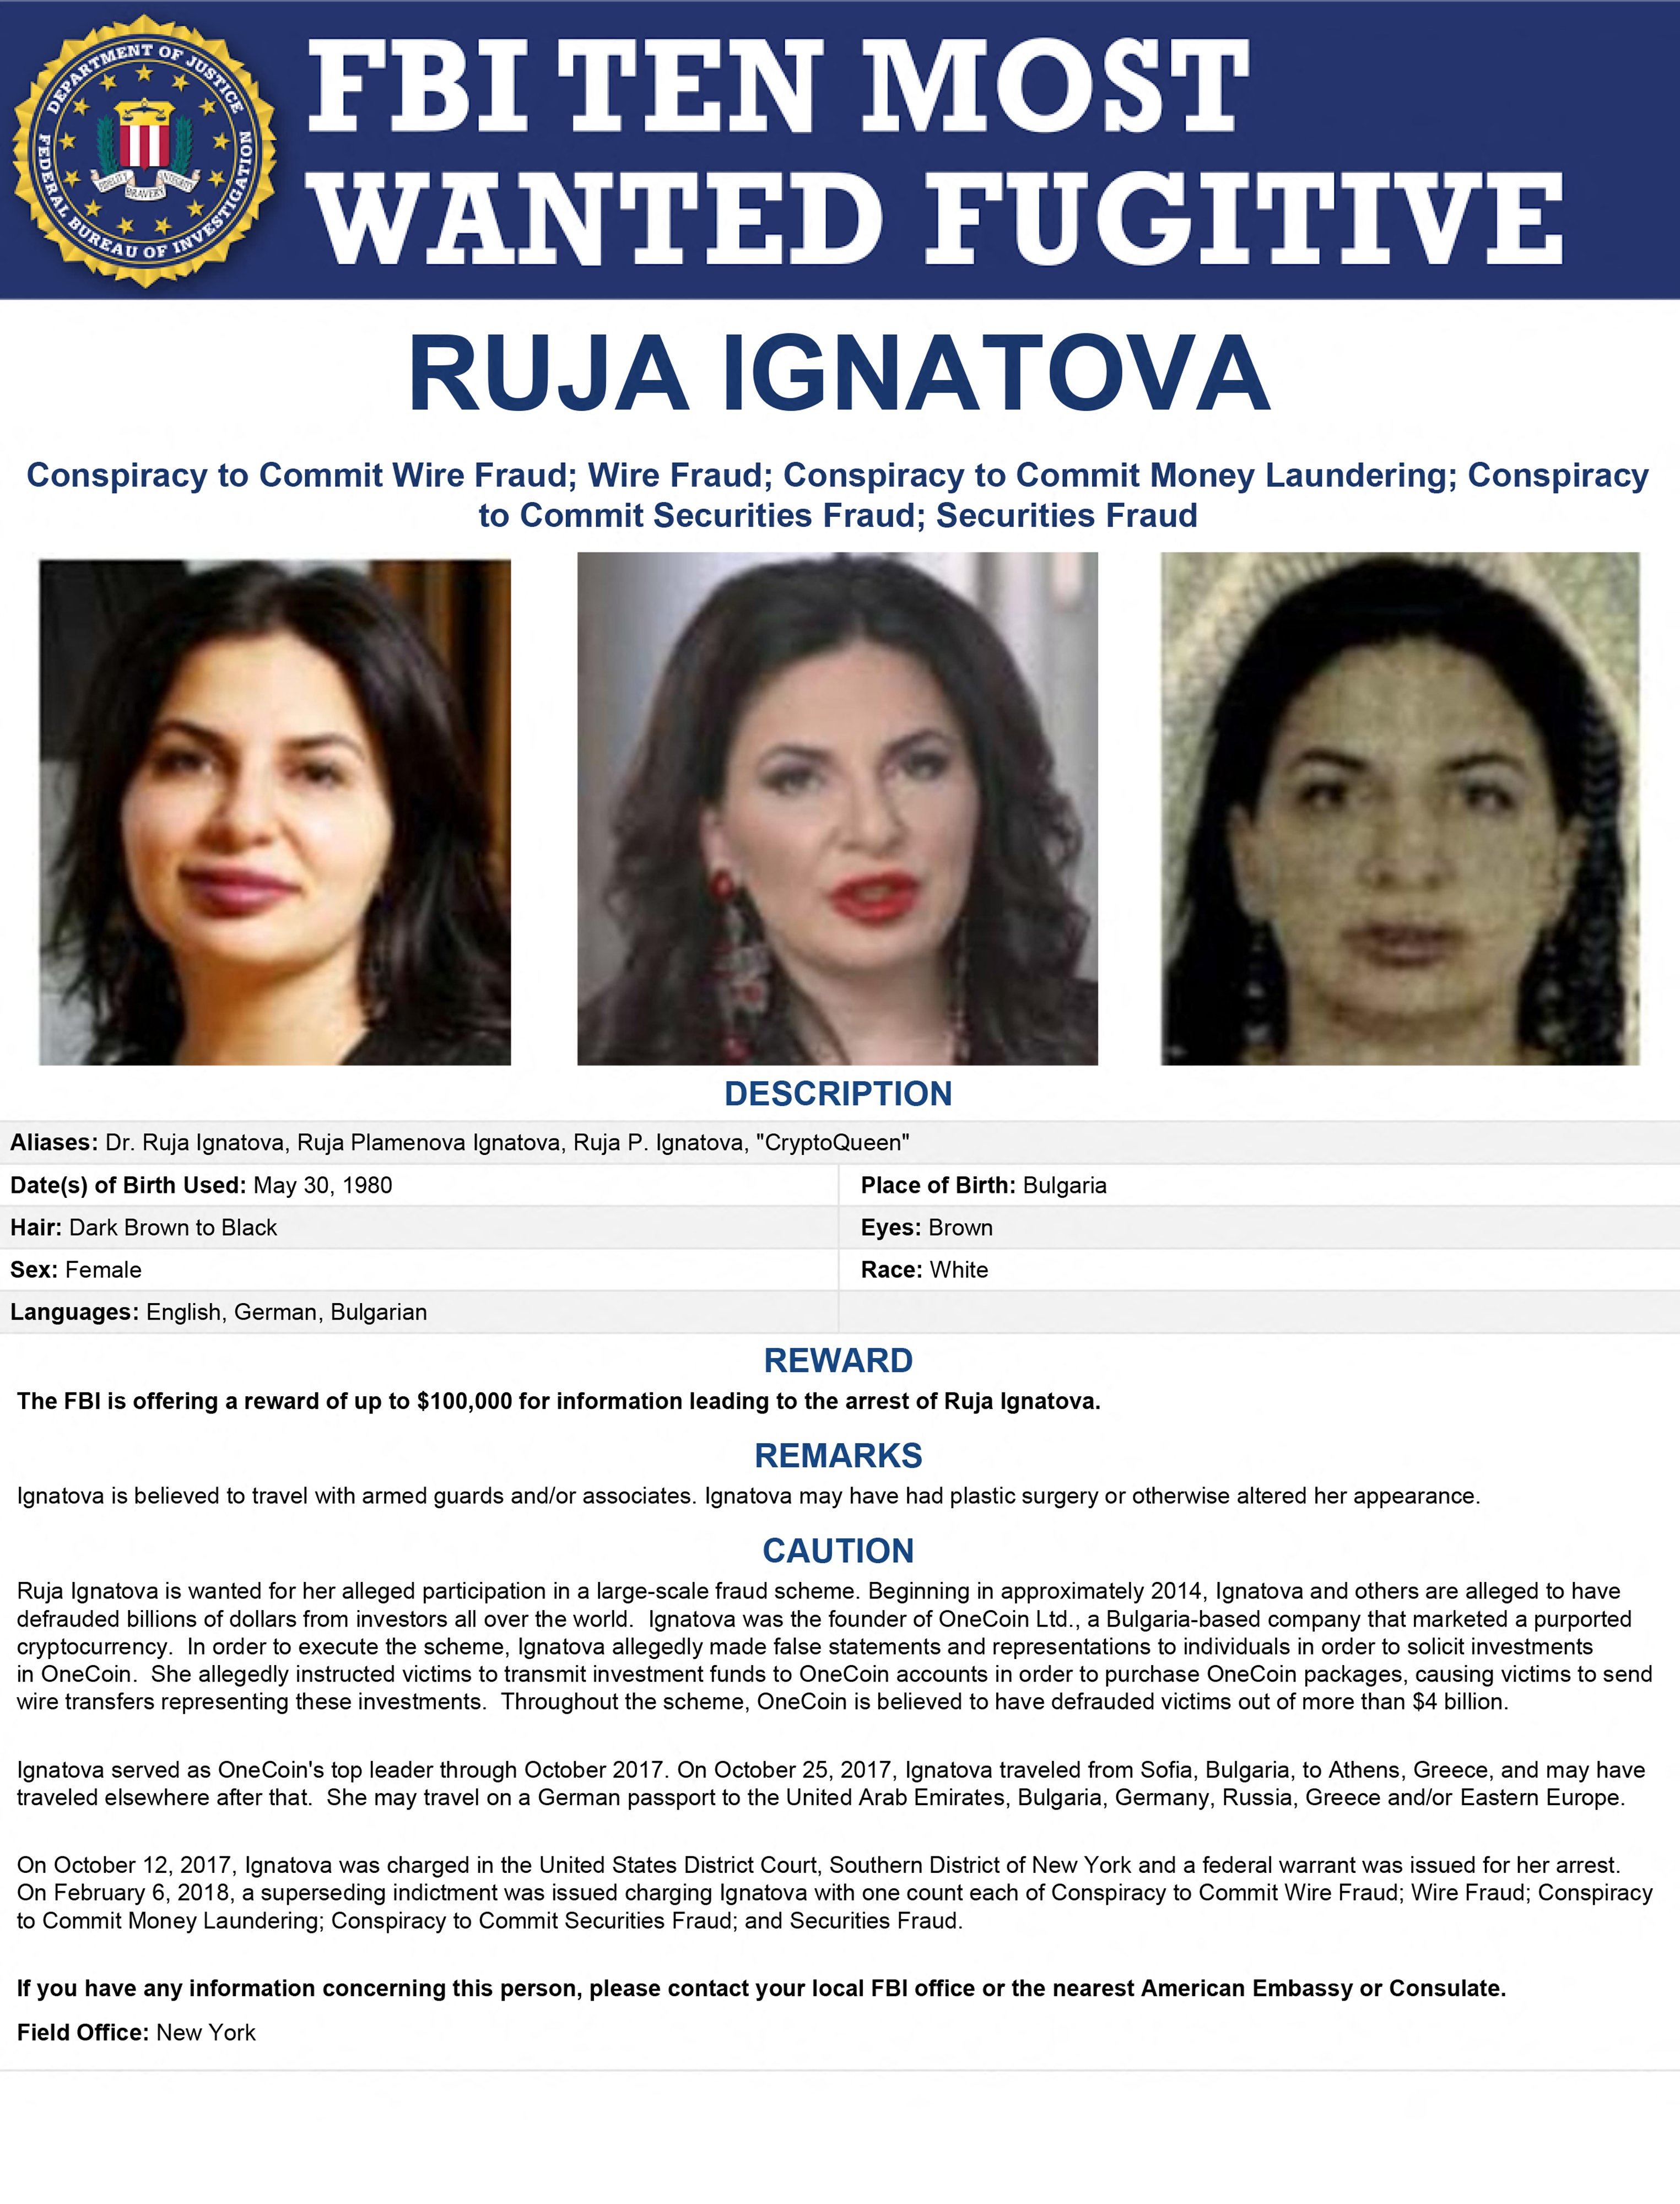 (FBI) ของสหรัฐเพิ่มชื่อ รูจา อิกนาโตวา